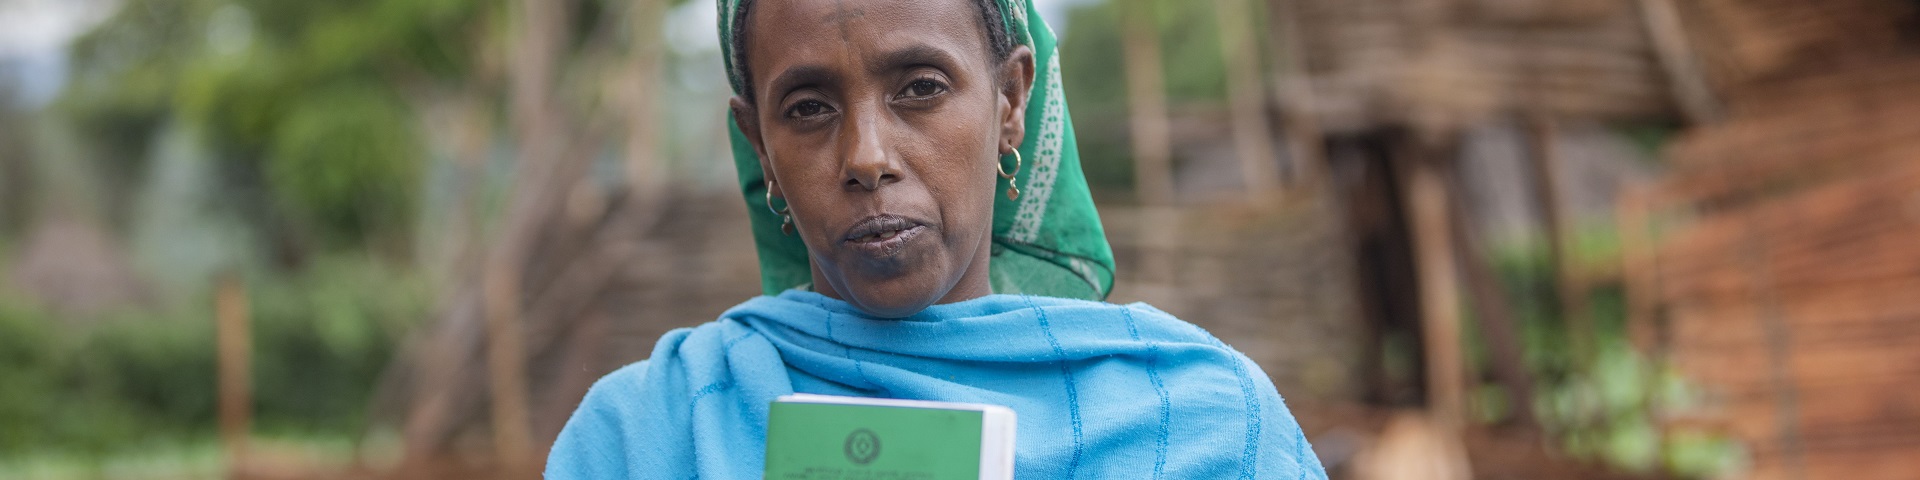 Vue de face d’une femme éthiopienne présentant son certificat foncier à la caméra.